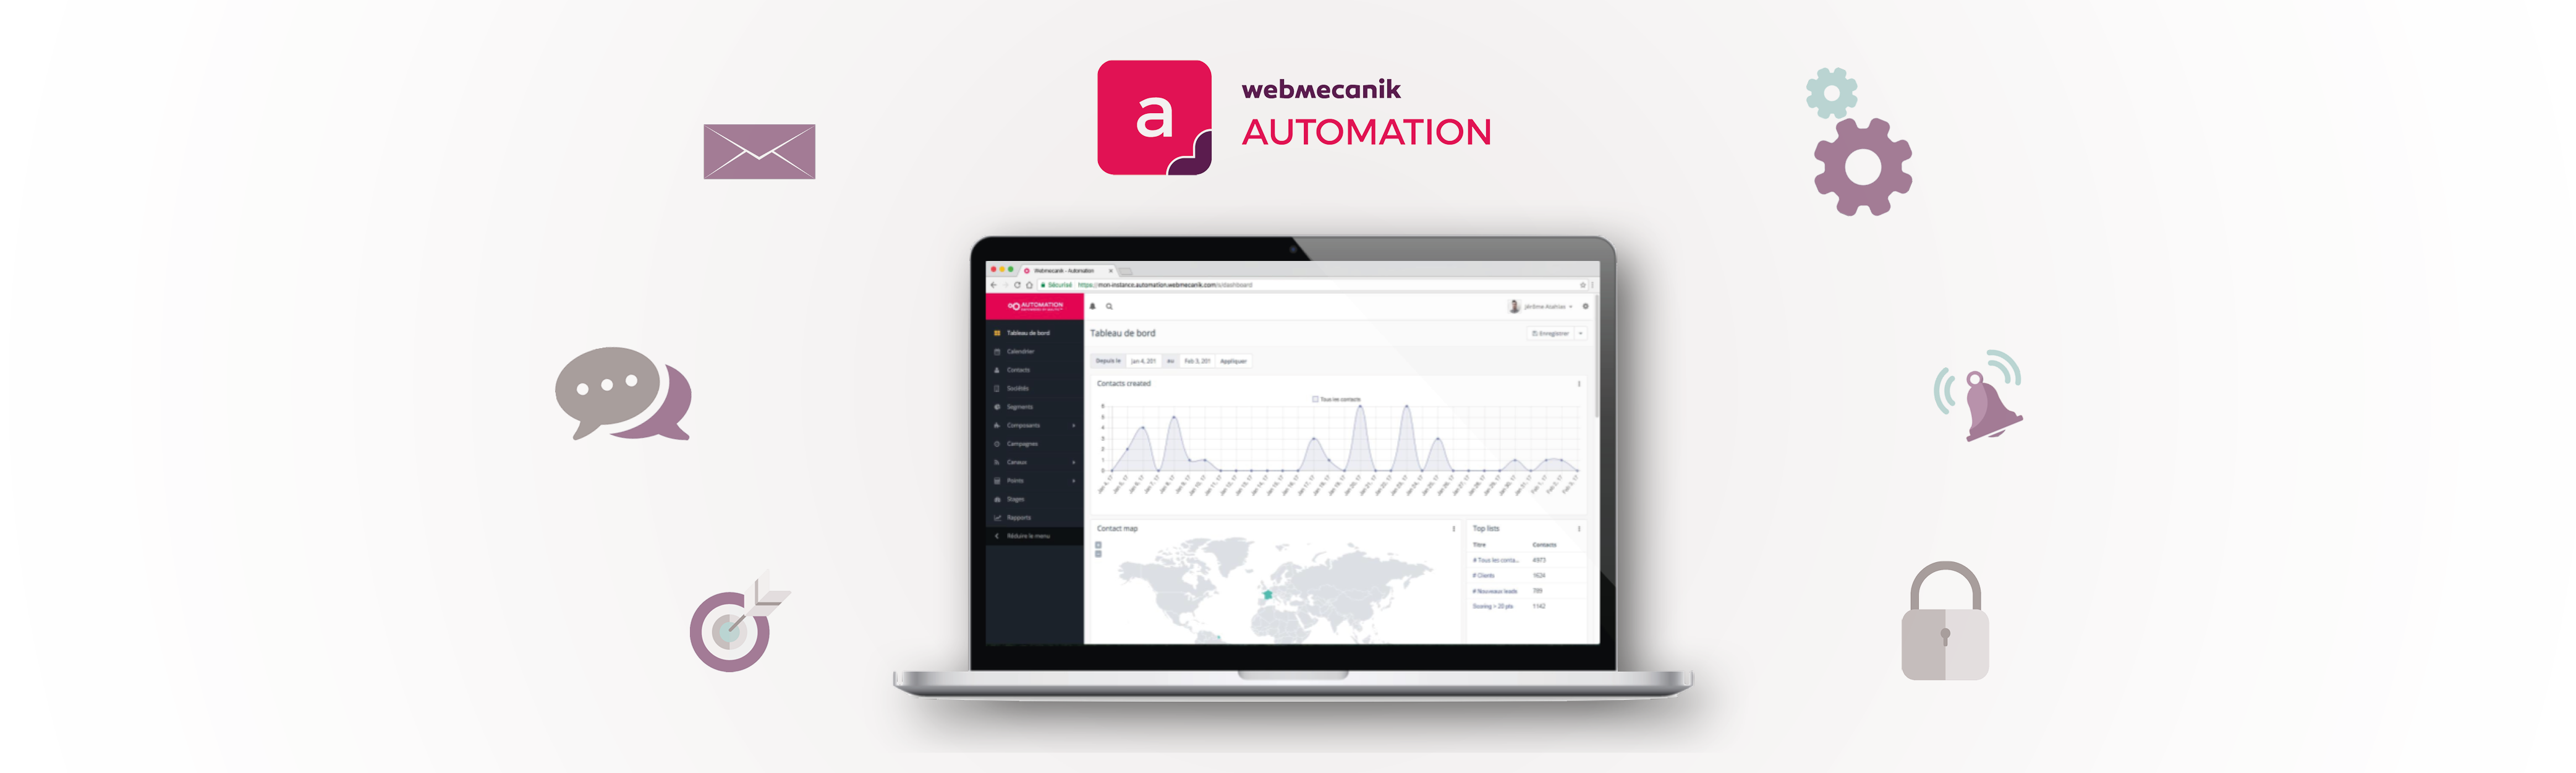 Review Webmecanik Automation: Open Source marketing automation solution without limits - Appvizer